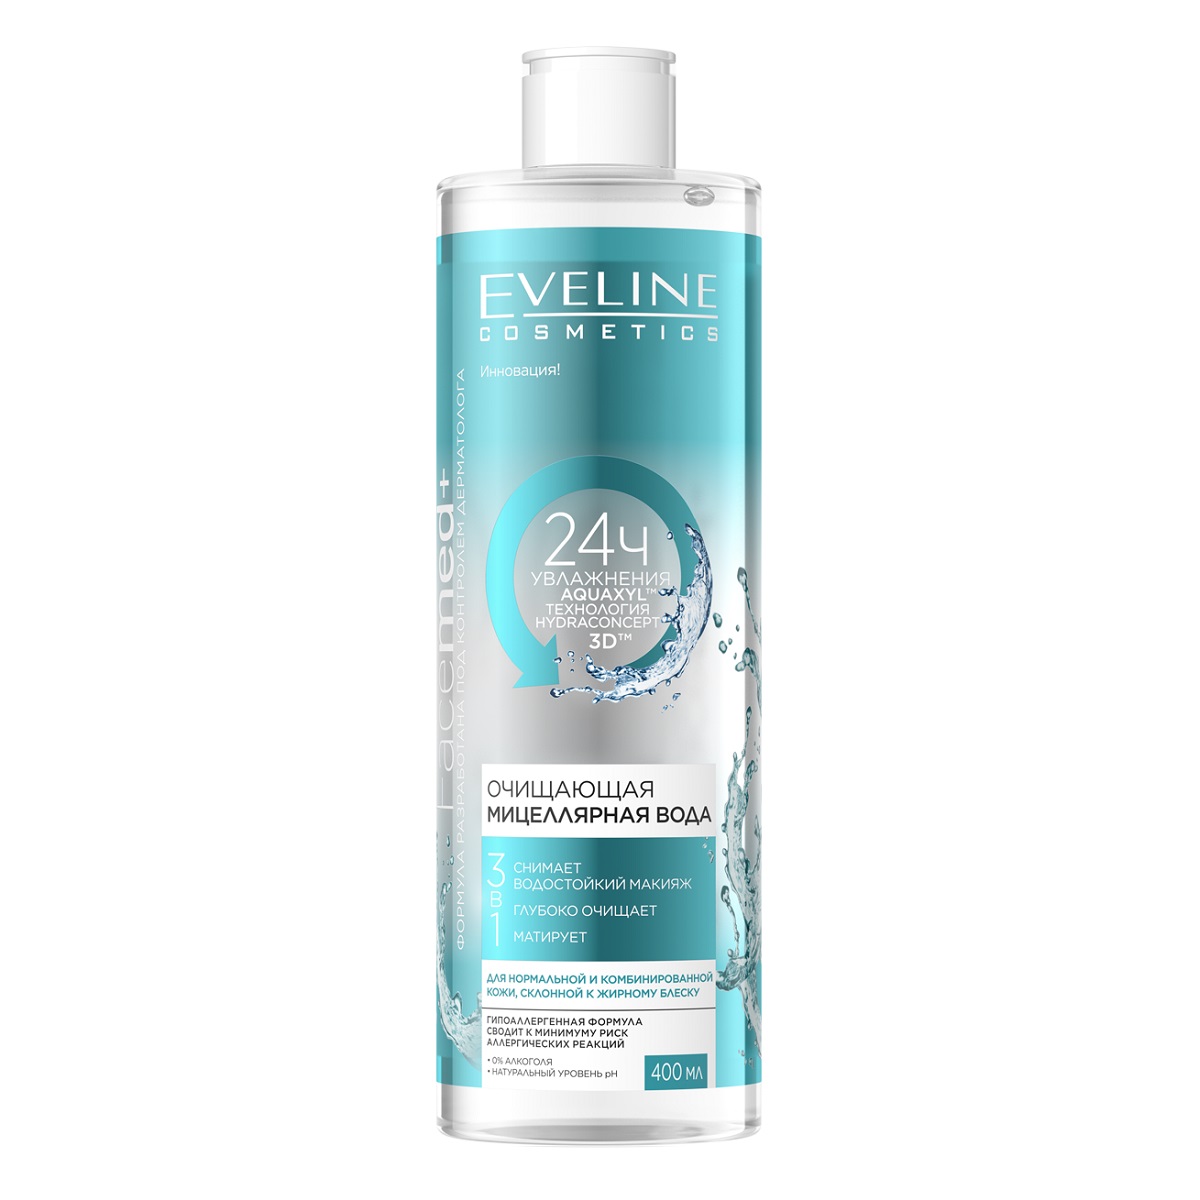 Eveline Cosmetics Очищающая мицеллярная вода 3 в 1, 400 мл (Eveline Cosmetics, Facemed+) eveline мицеллярная вода eveline facemed 3 в 1 очищающая 400 мл